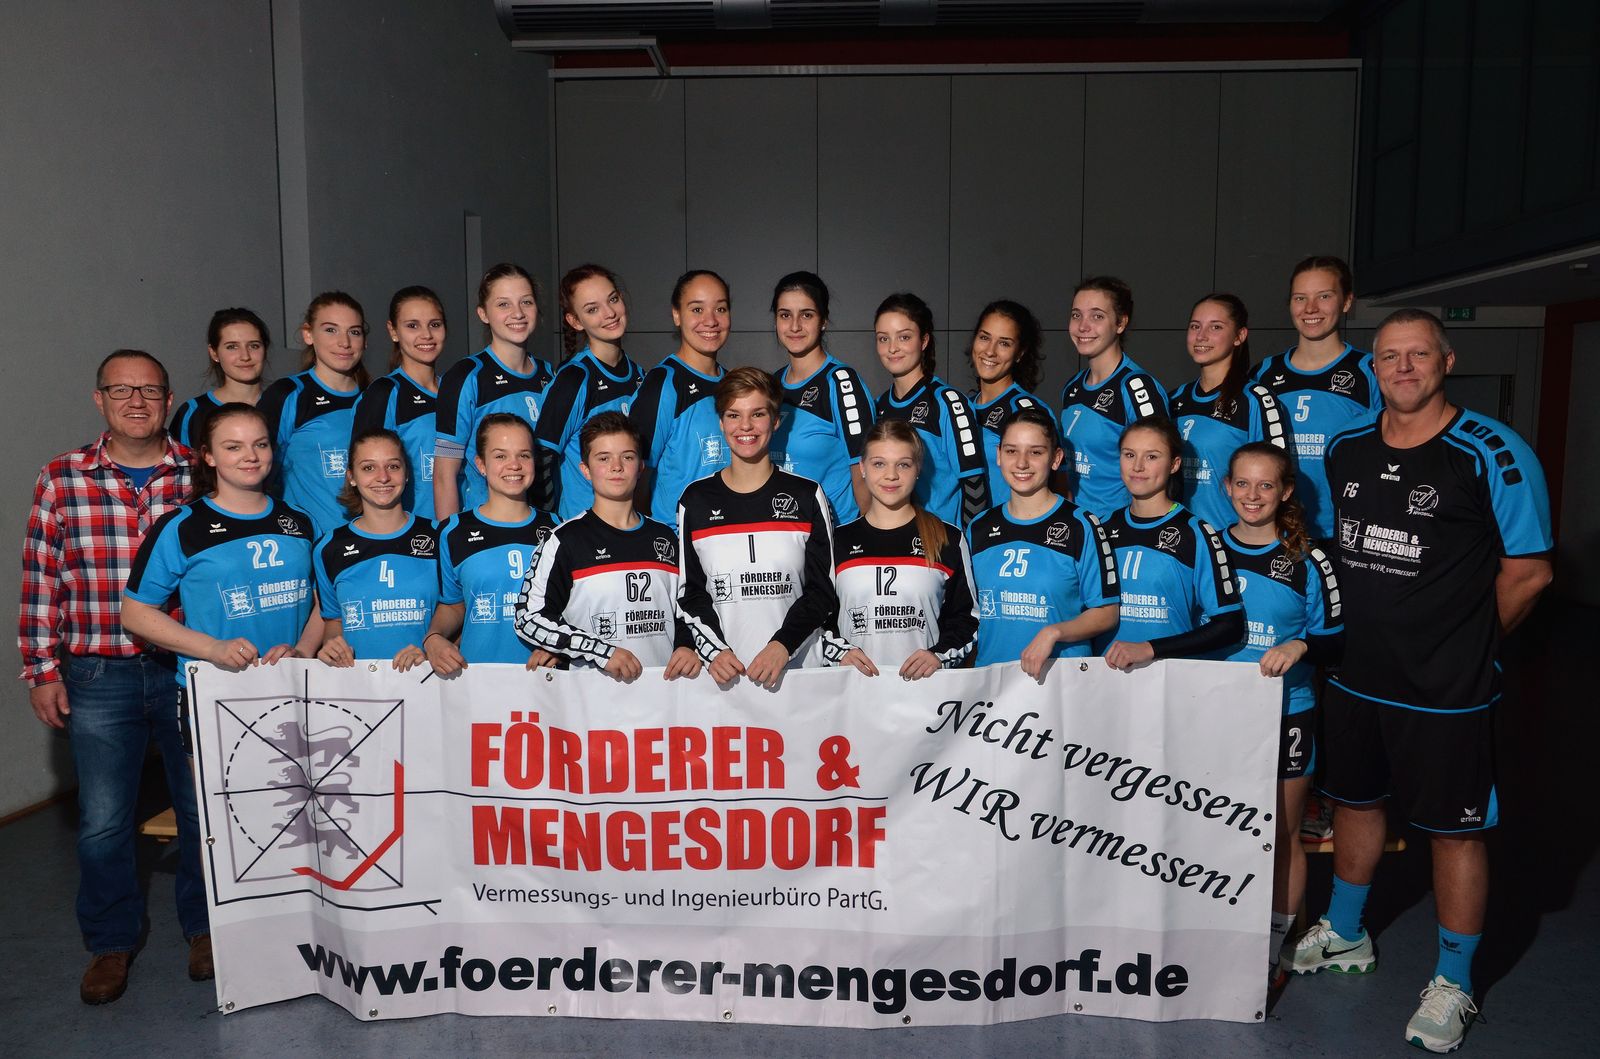 sponsorenfoto-foerderer-mengesdorf_dsc_5650